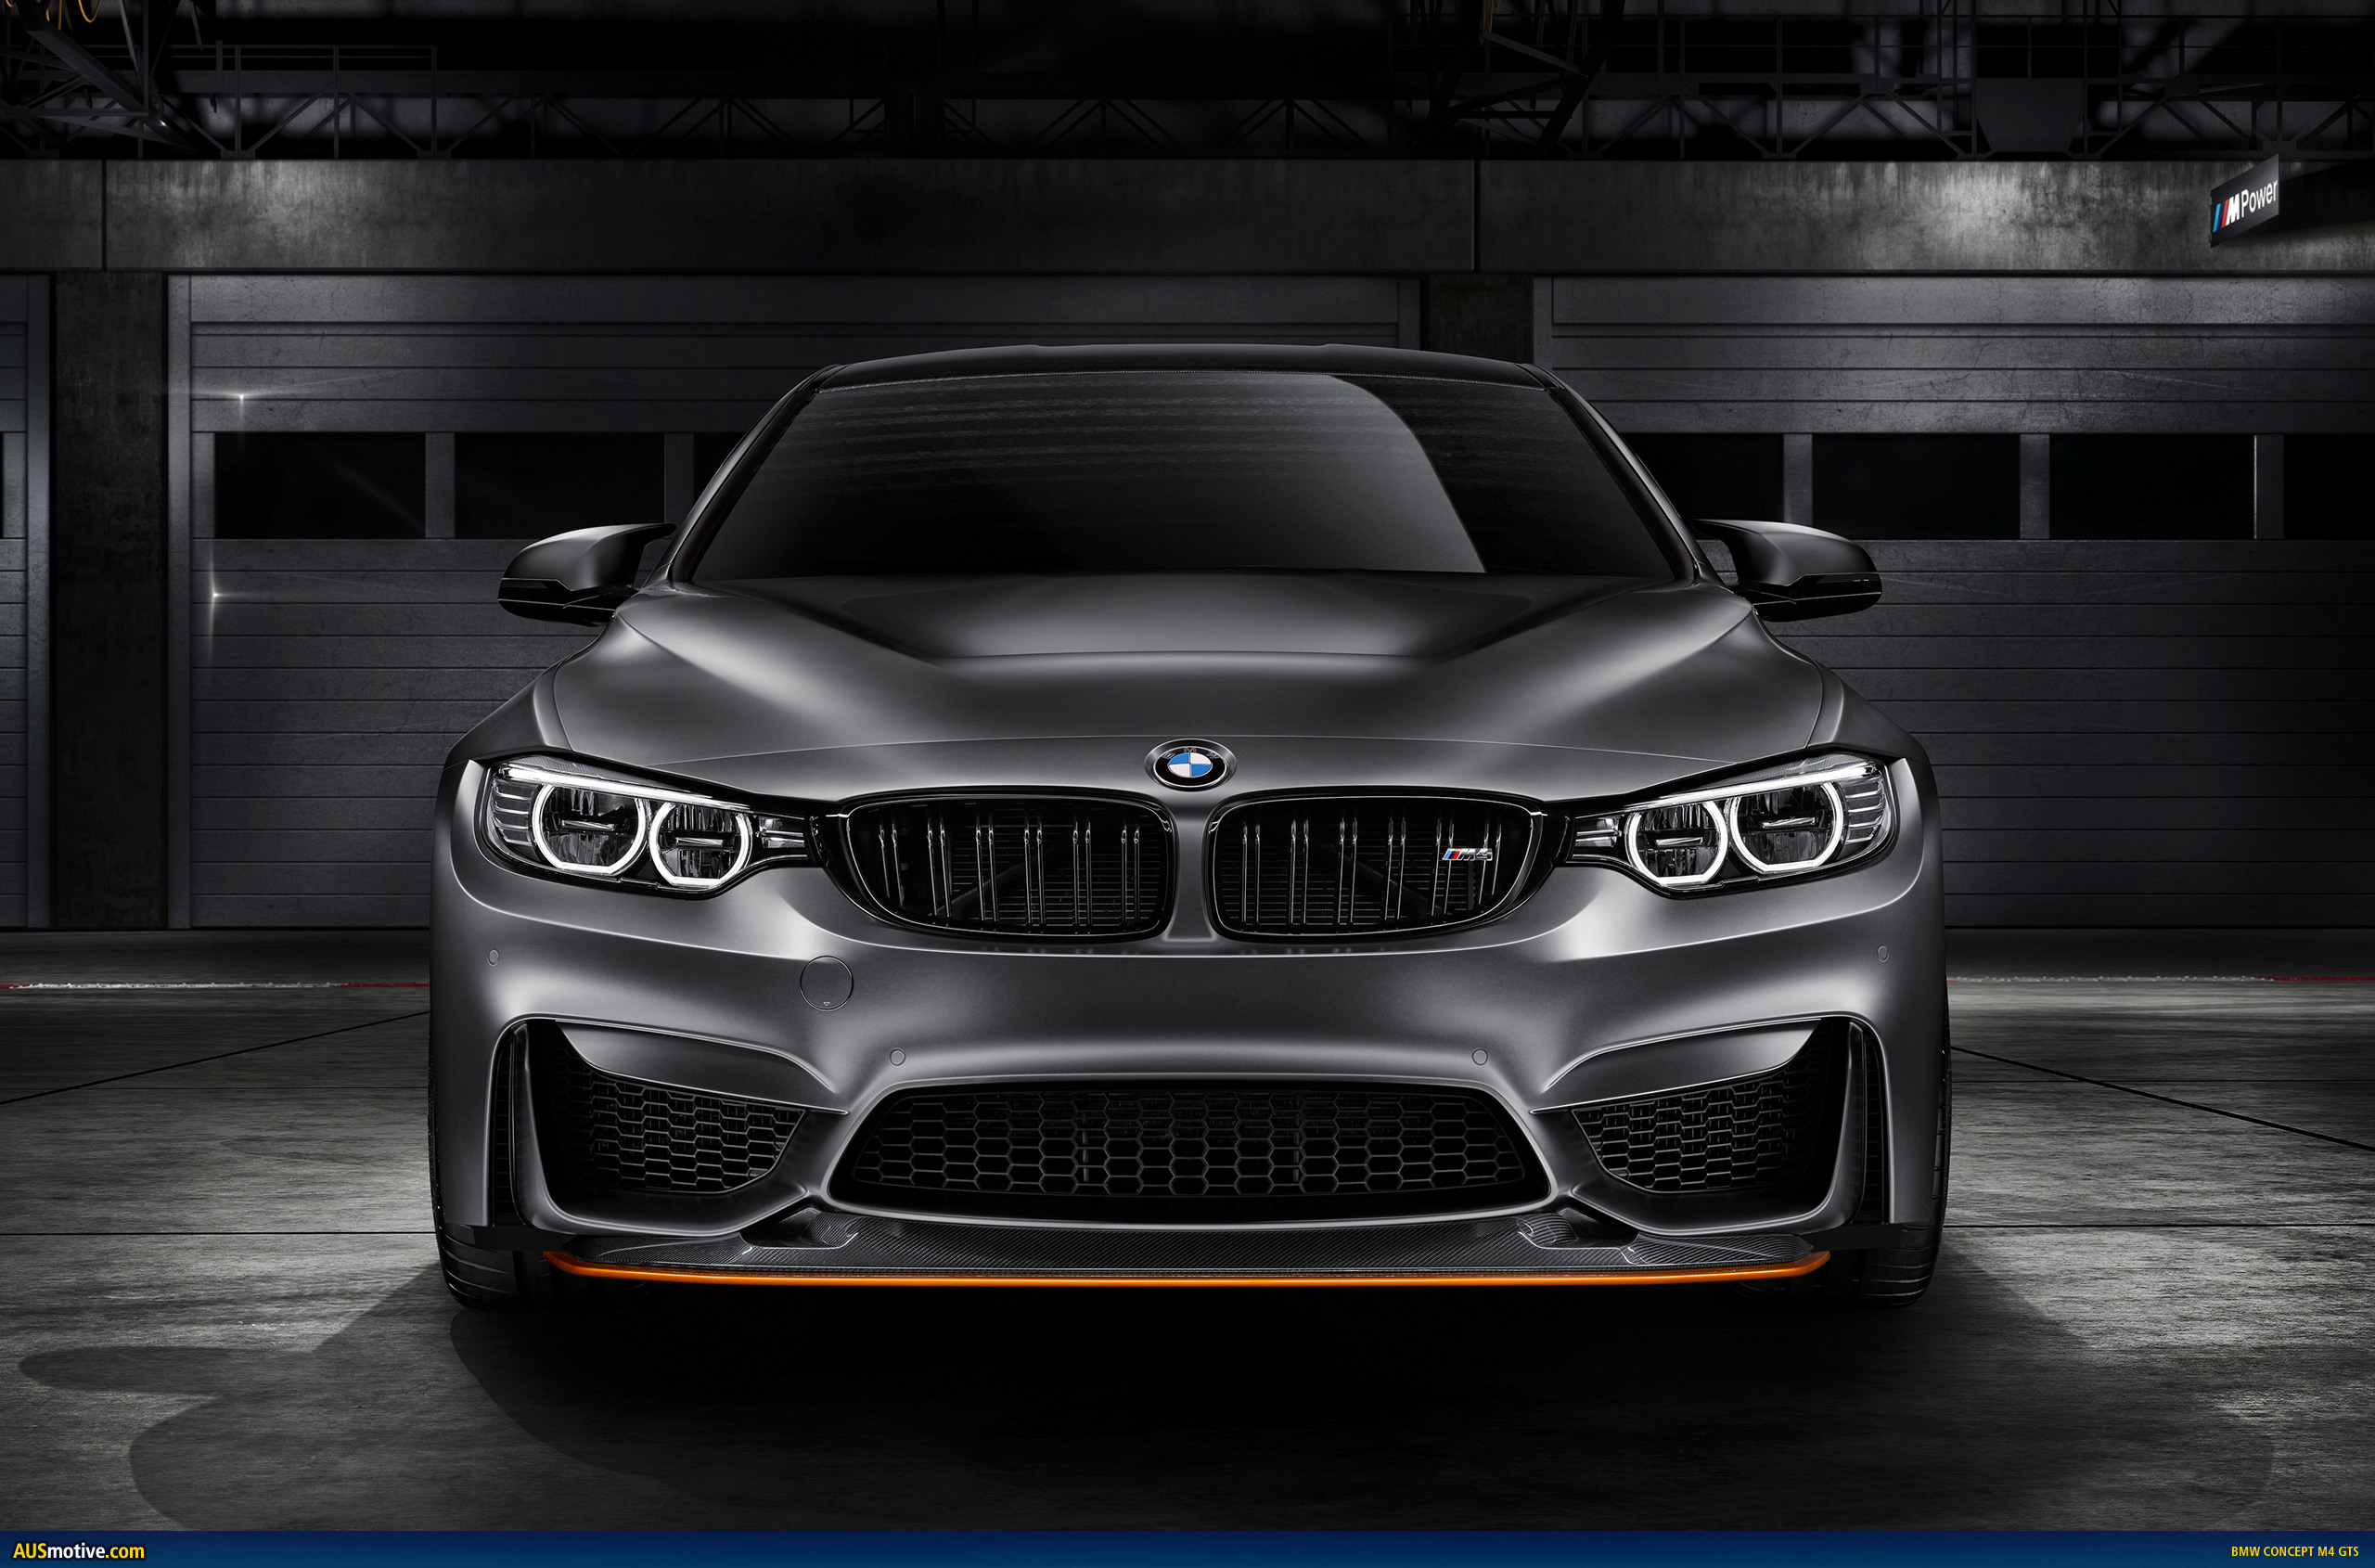 AUSmotive.com » BMW Concept M4 GTS revealed